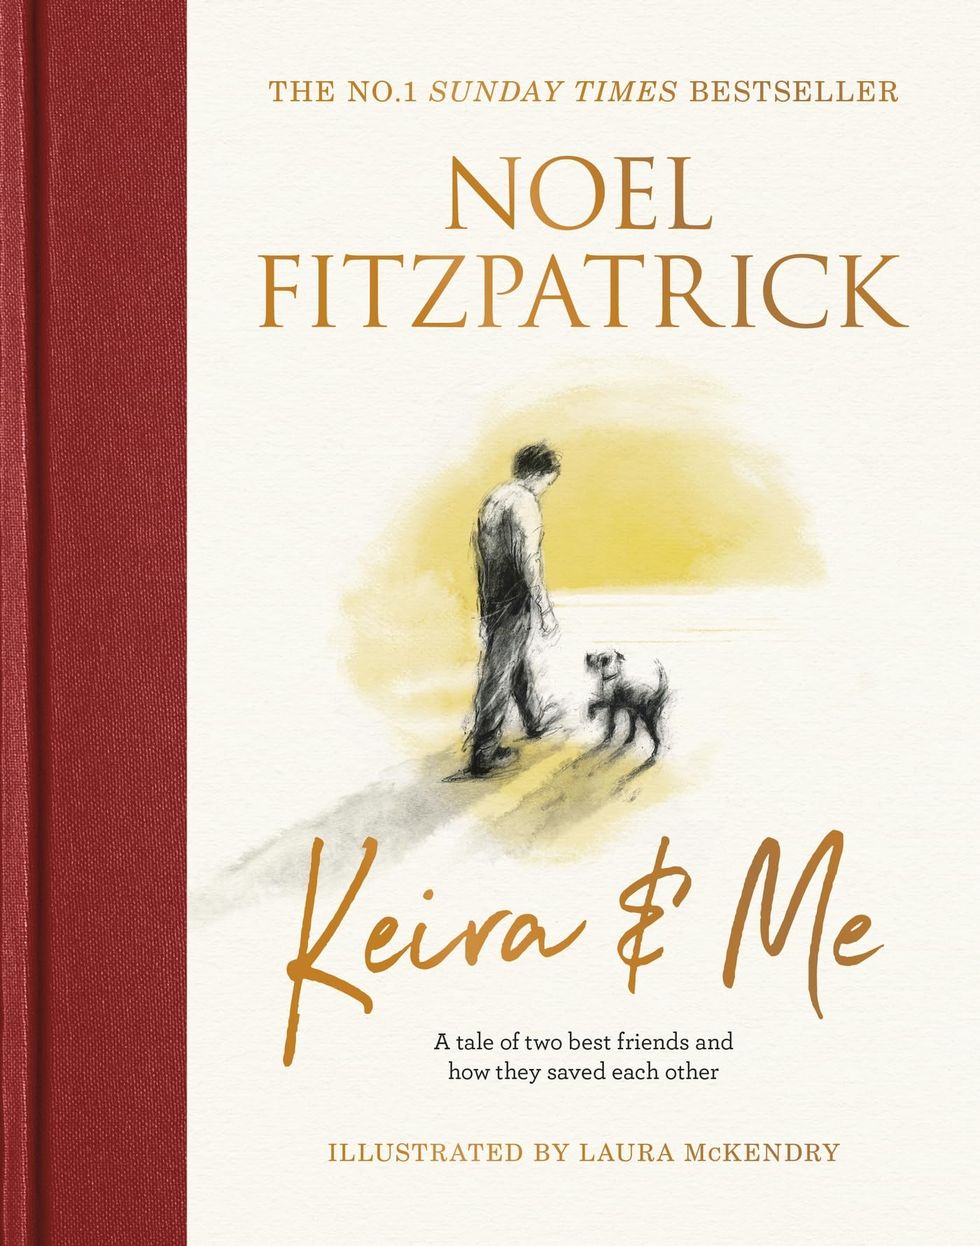 Keira & Me by Noel Fitzpatrick